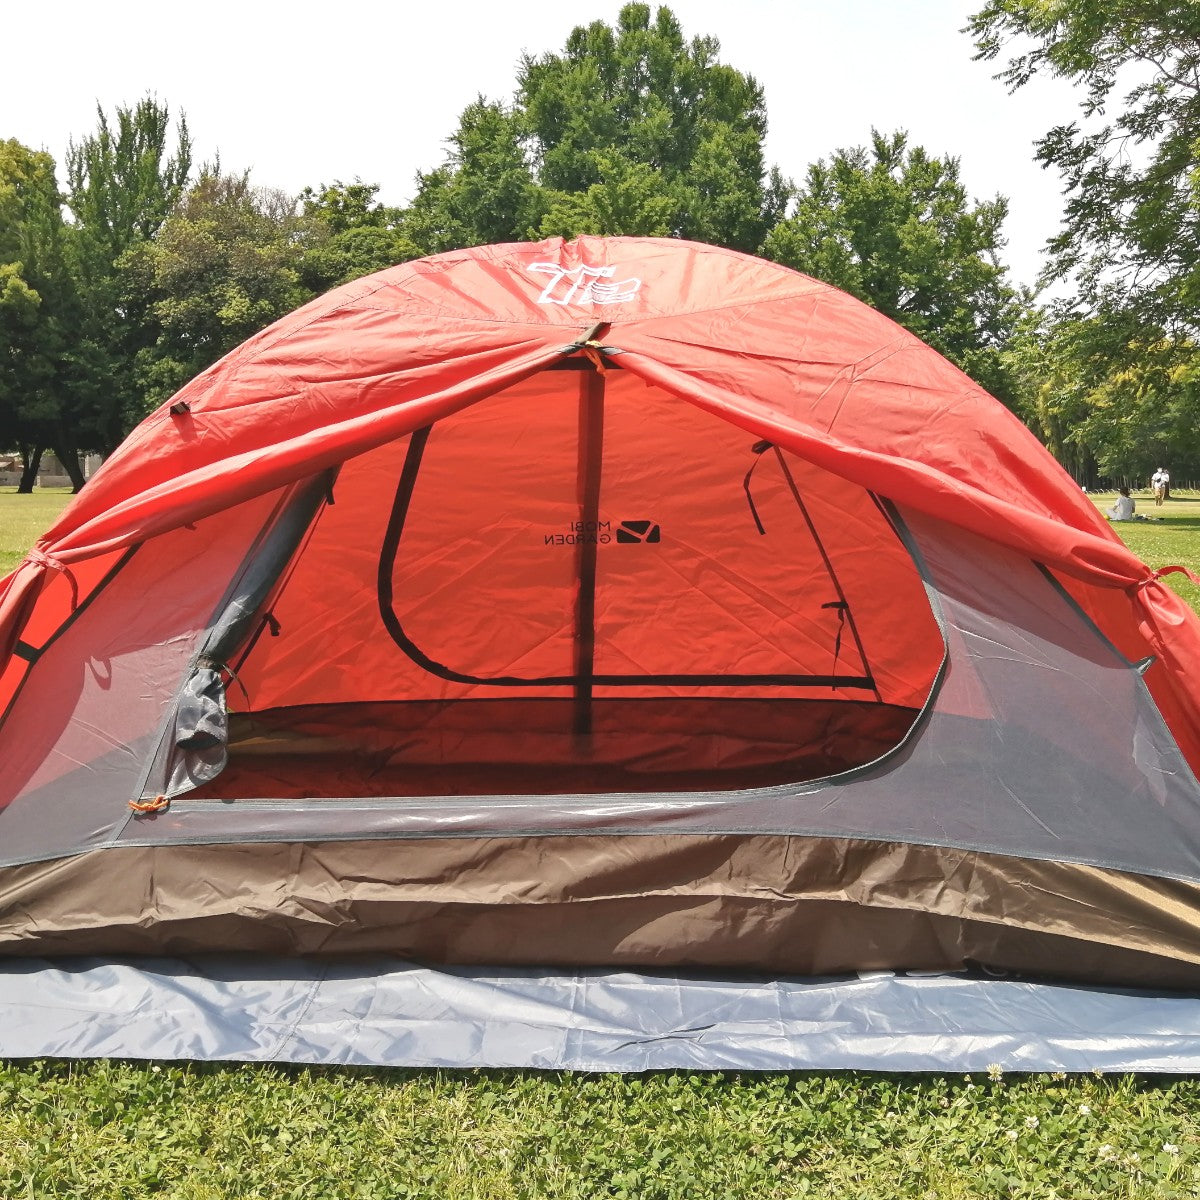 MOBI GARDEN キャンプテント 2-3人用 超軽量 バックパッキングテント ハイキングやサイクリング用 フットプリント 軽量 